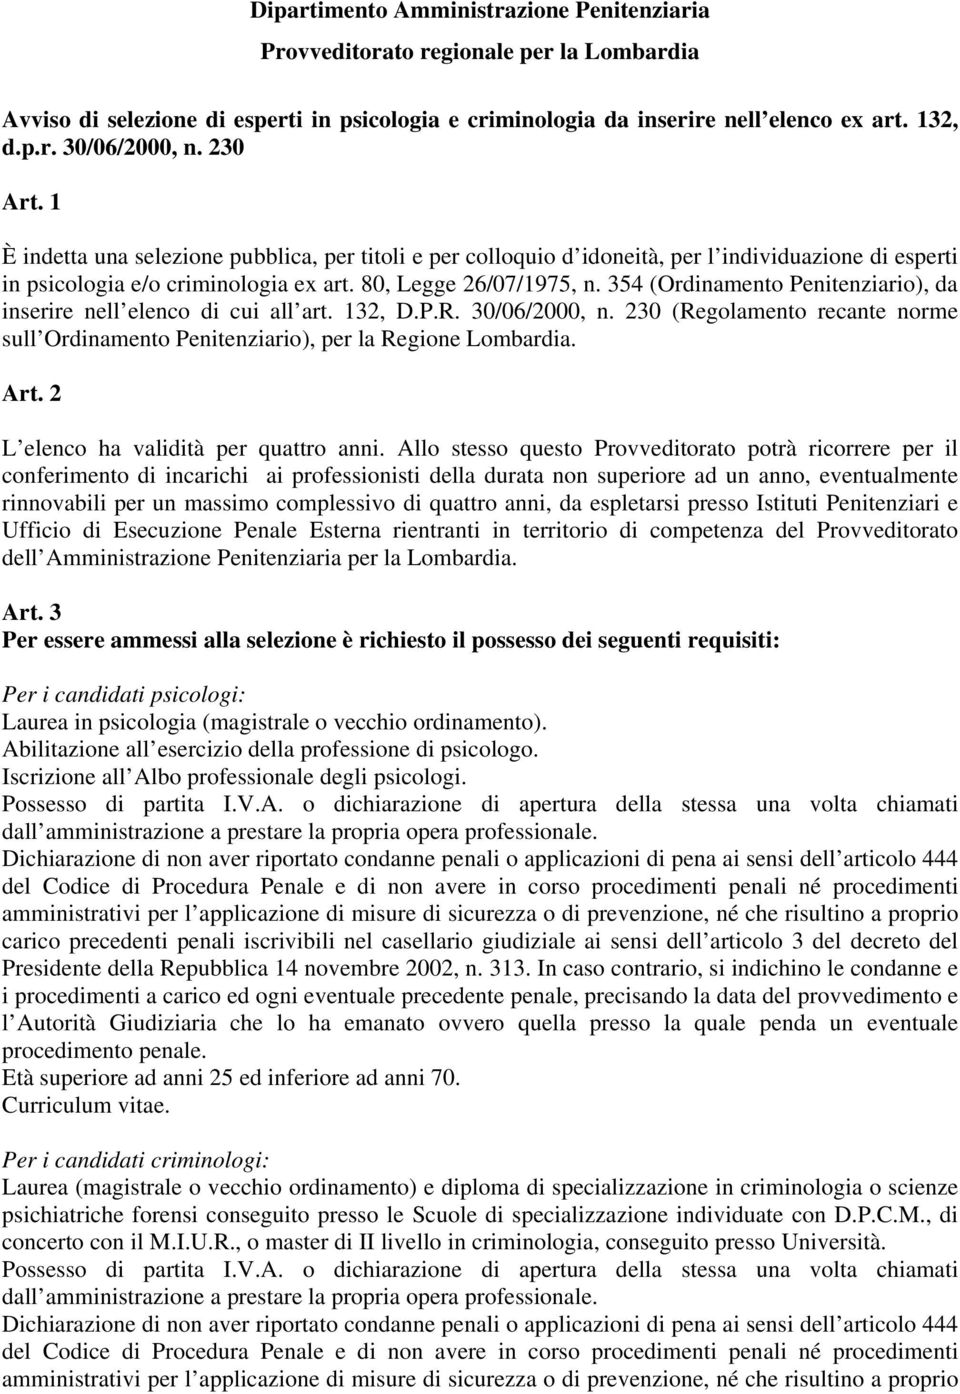 354 (Ordinamento Penitenziario), da inserire nell elenco di cui all art. 132, D.P.R. 30/06/2000, n. 230 (Regolamento recante norme sull Ordinamento Penitenziario), per la Regione Lombardia. Art.